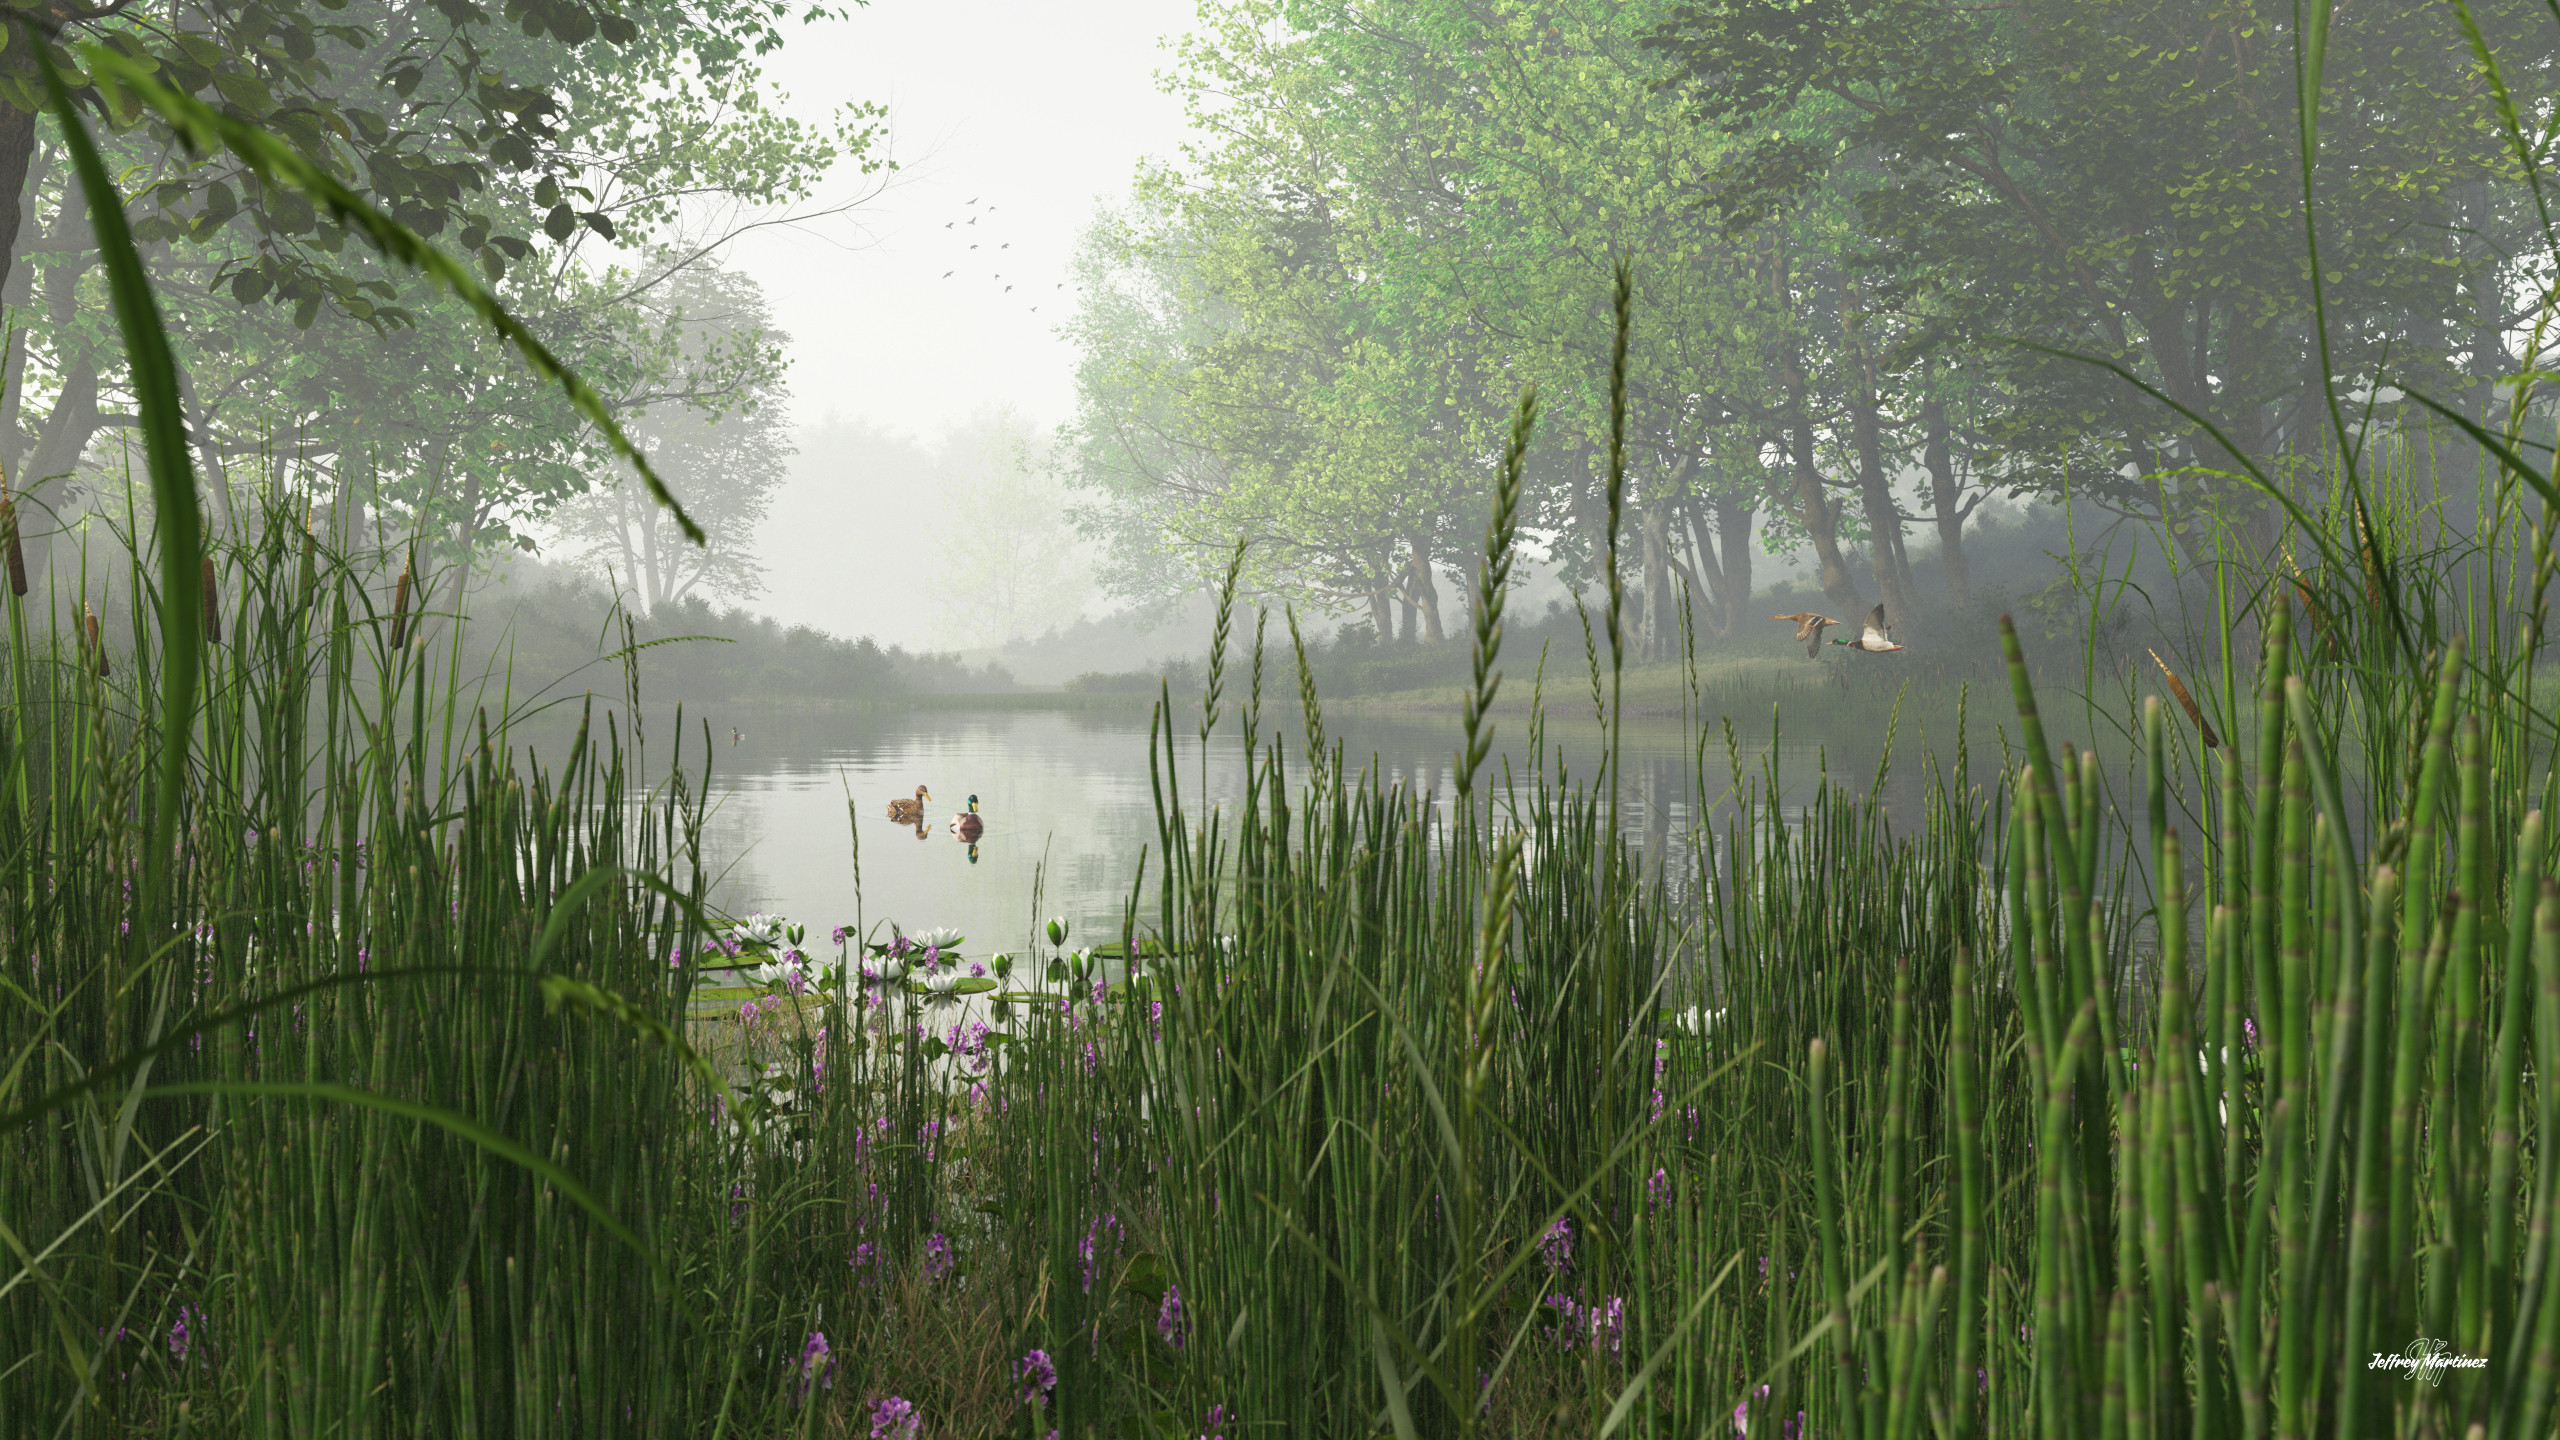 A Quiet Little Pond
20211115TG